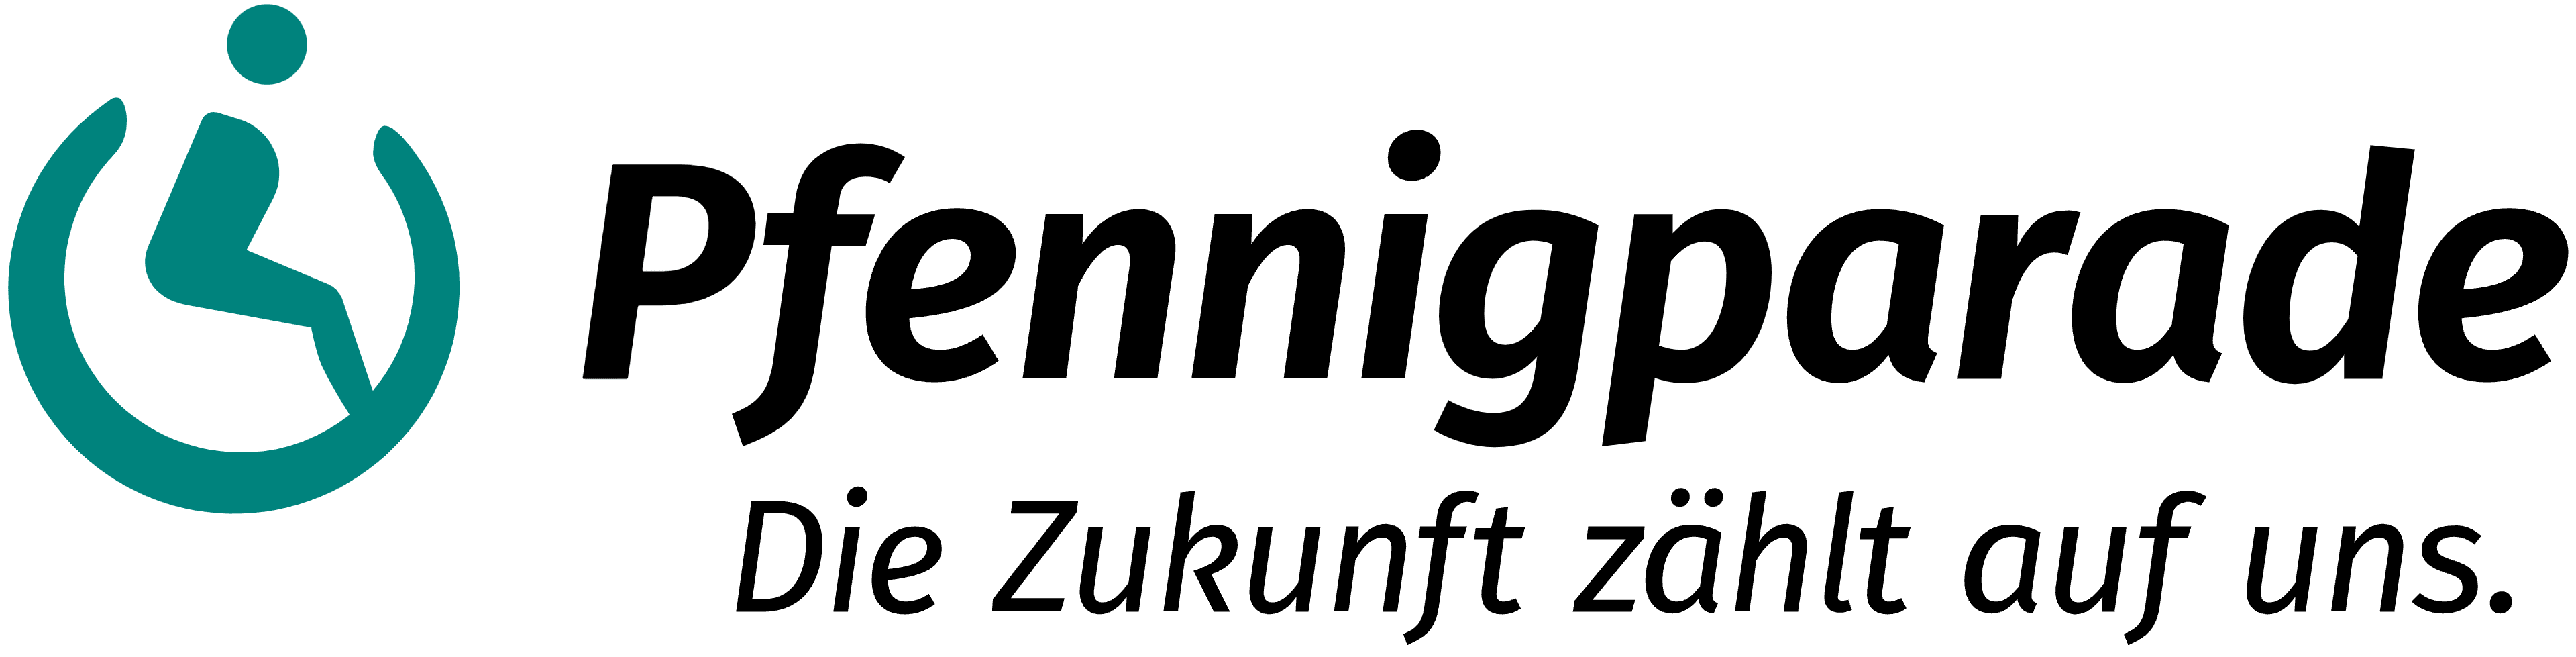 Stiftung Pfennigparade logo